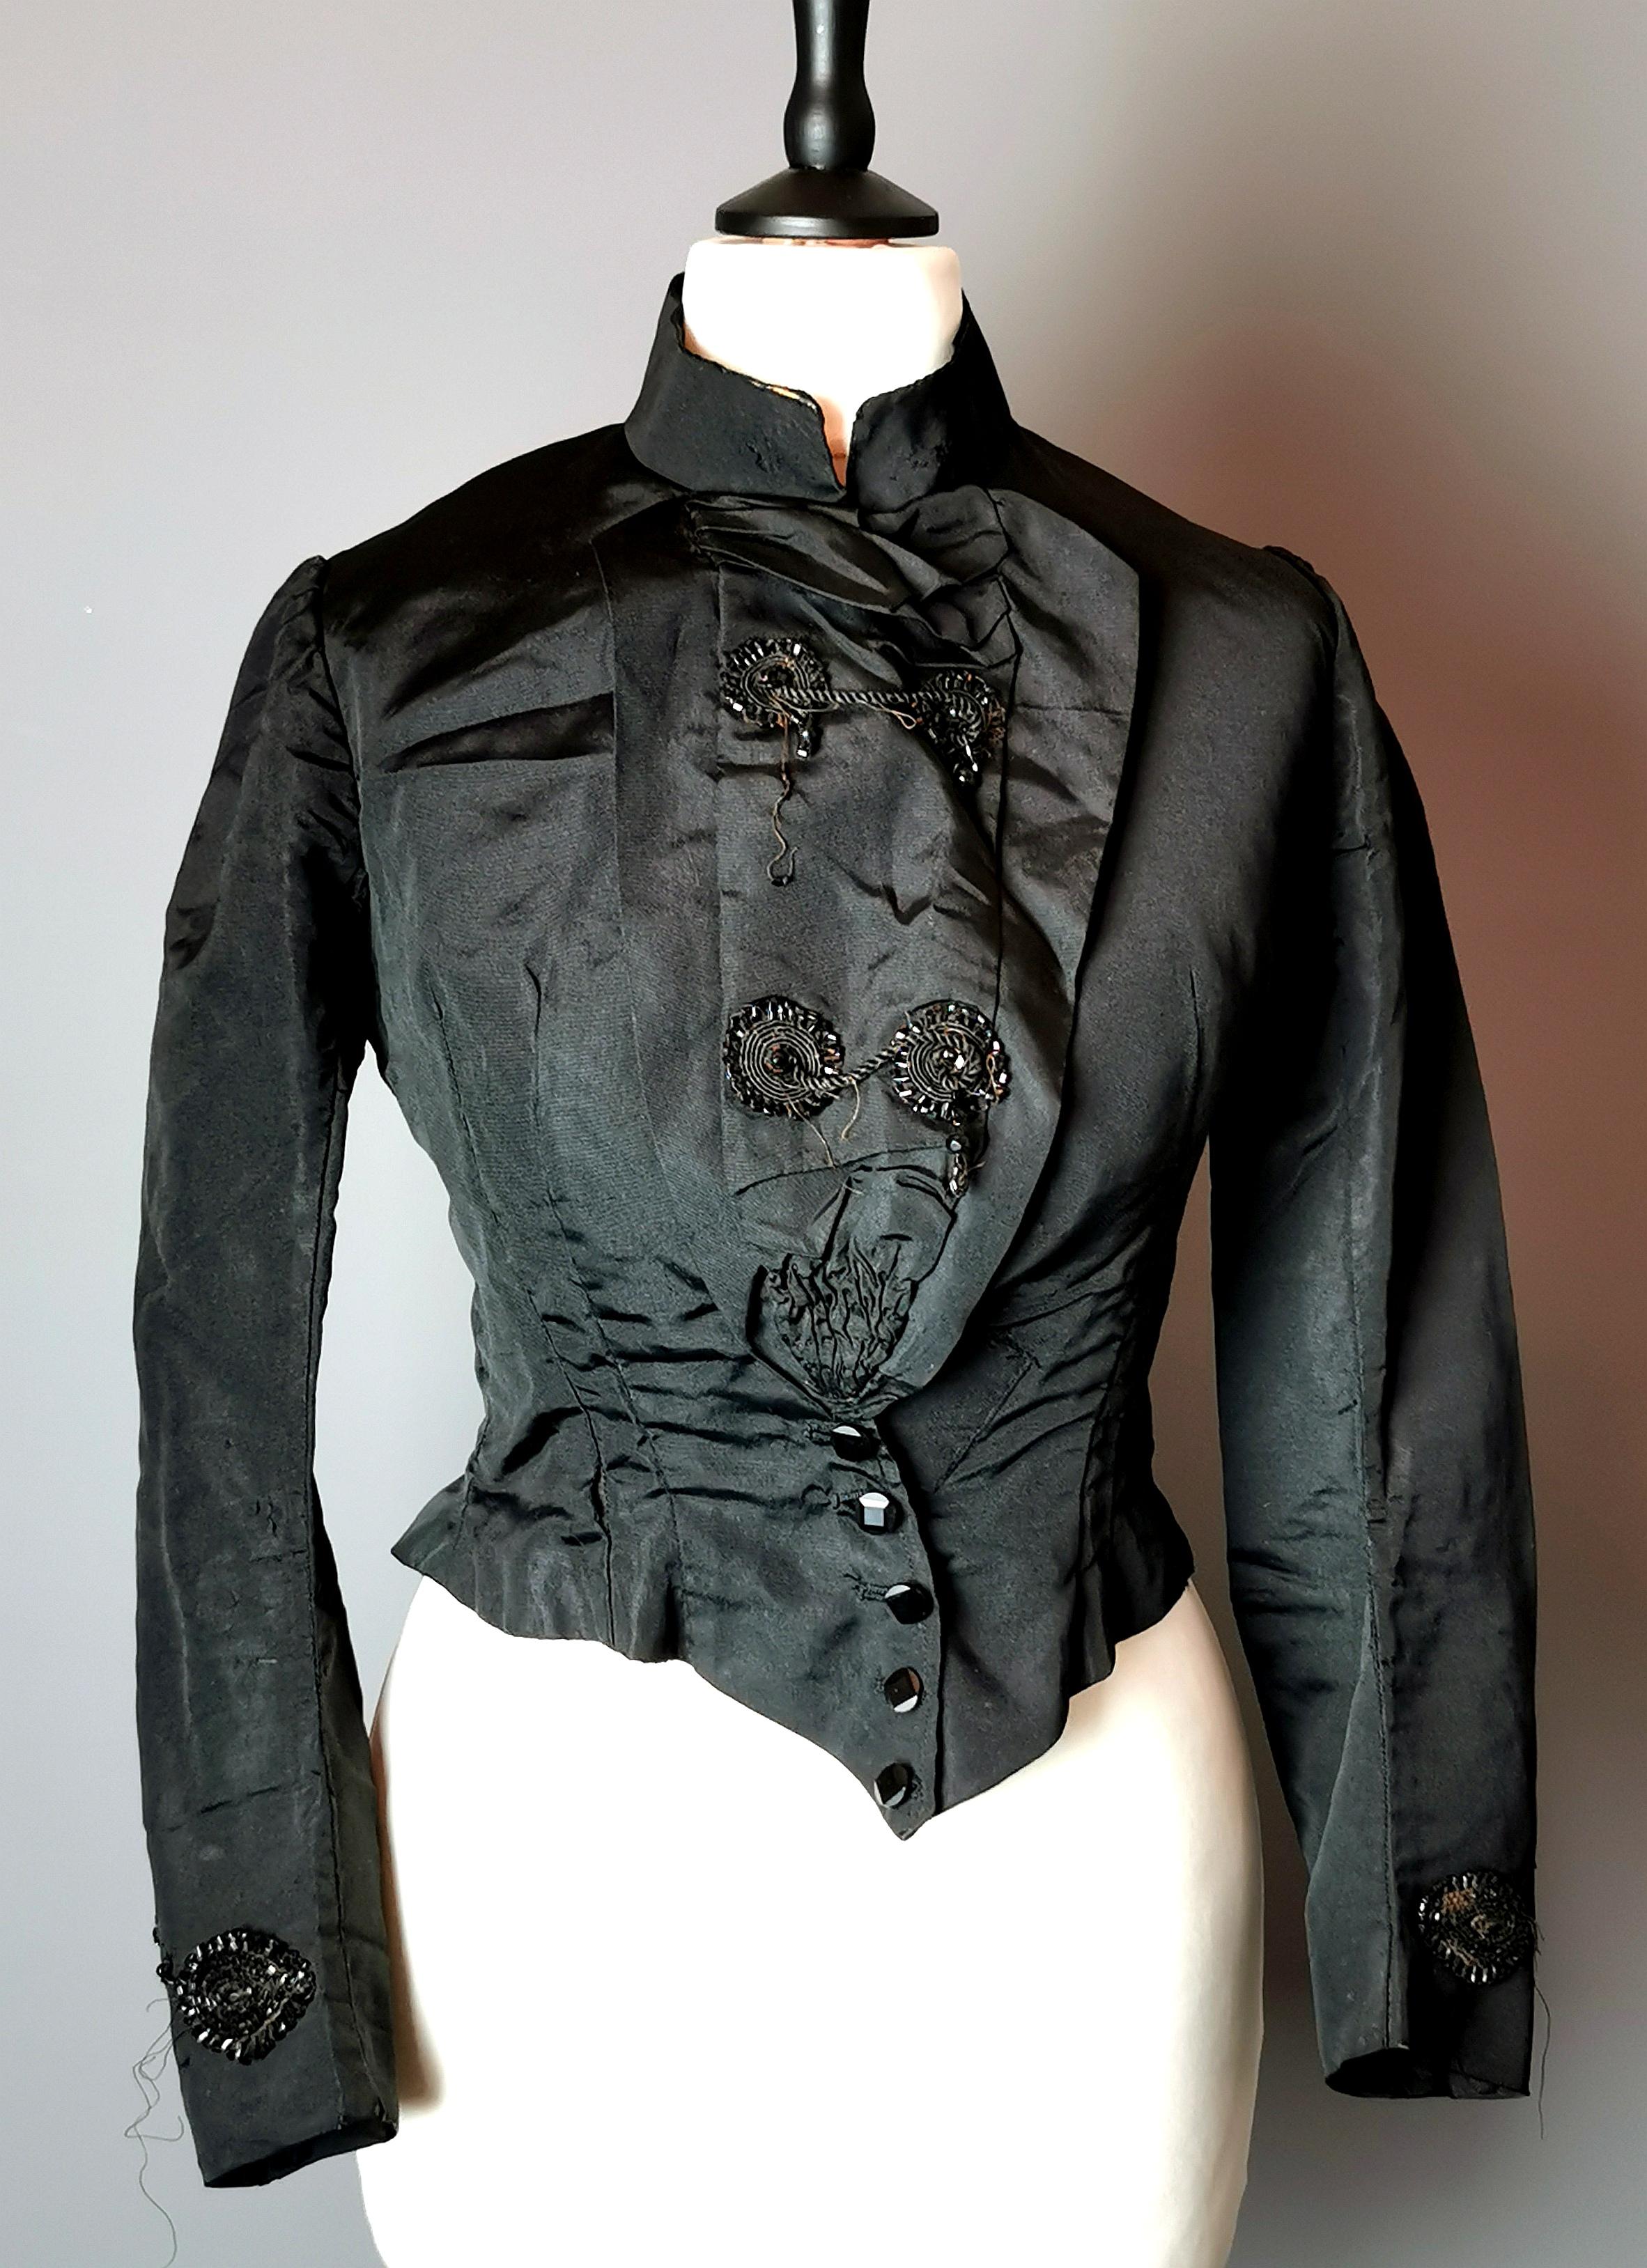 Eine schöne antike, viktorianische Ära schwarz Seide Mischung Mieder oder Bluse.

Es ist sehr tailliert, die Taille fällt vorne spitz zu, hoch auf den Hüften mit einer breiten Falte am Rücken, die ein Bustle / Röcke ermöglicht.

Es hat einen